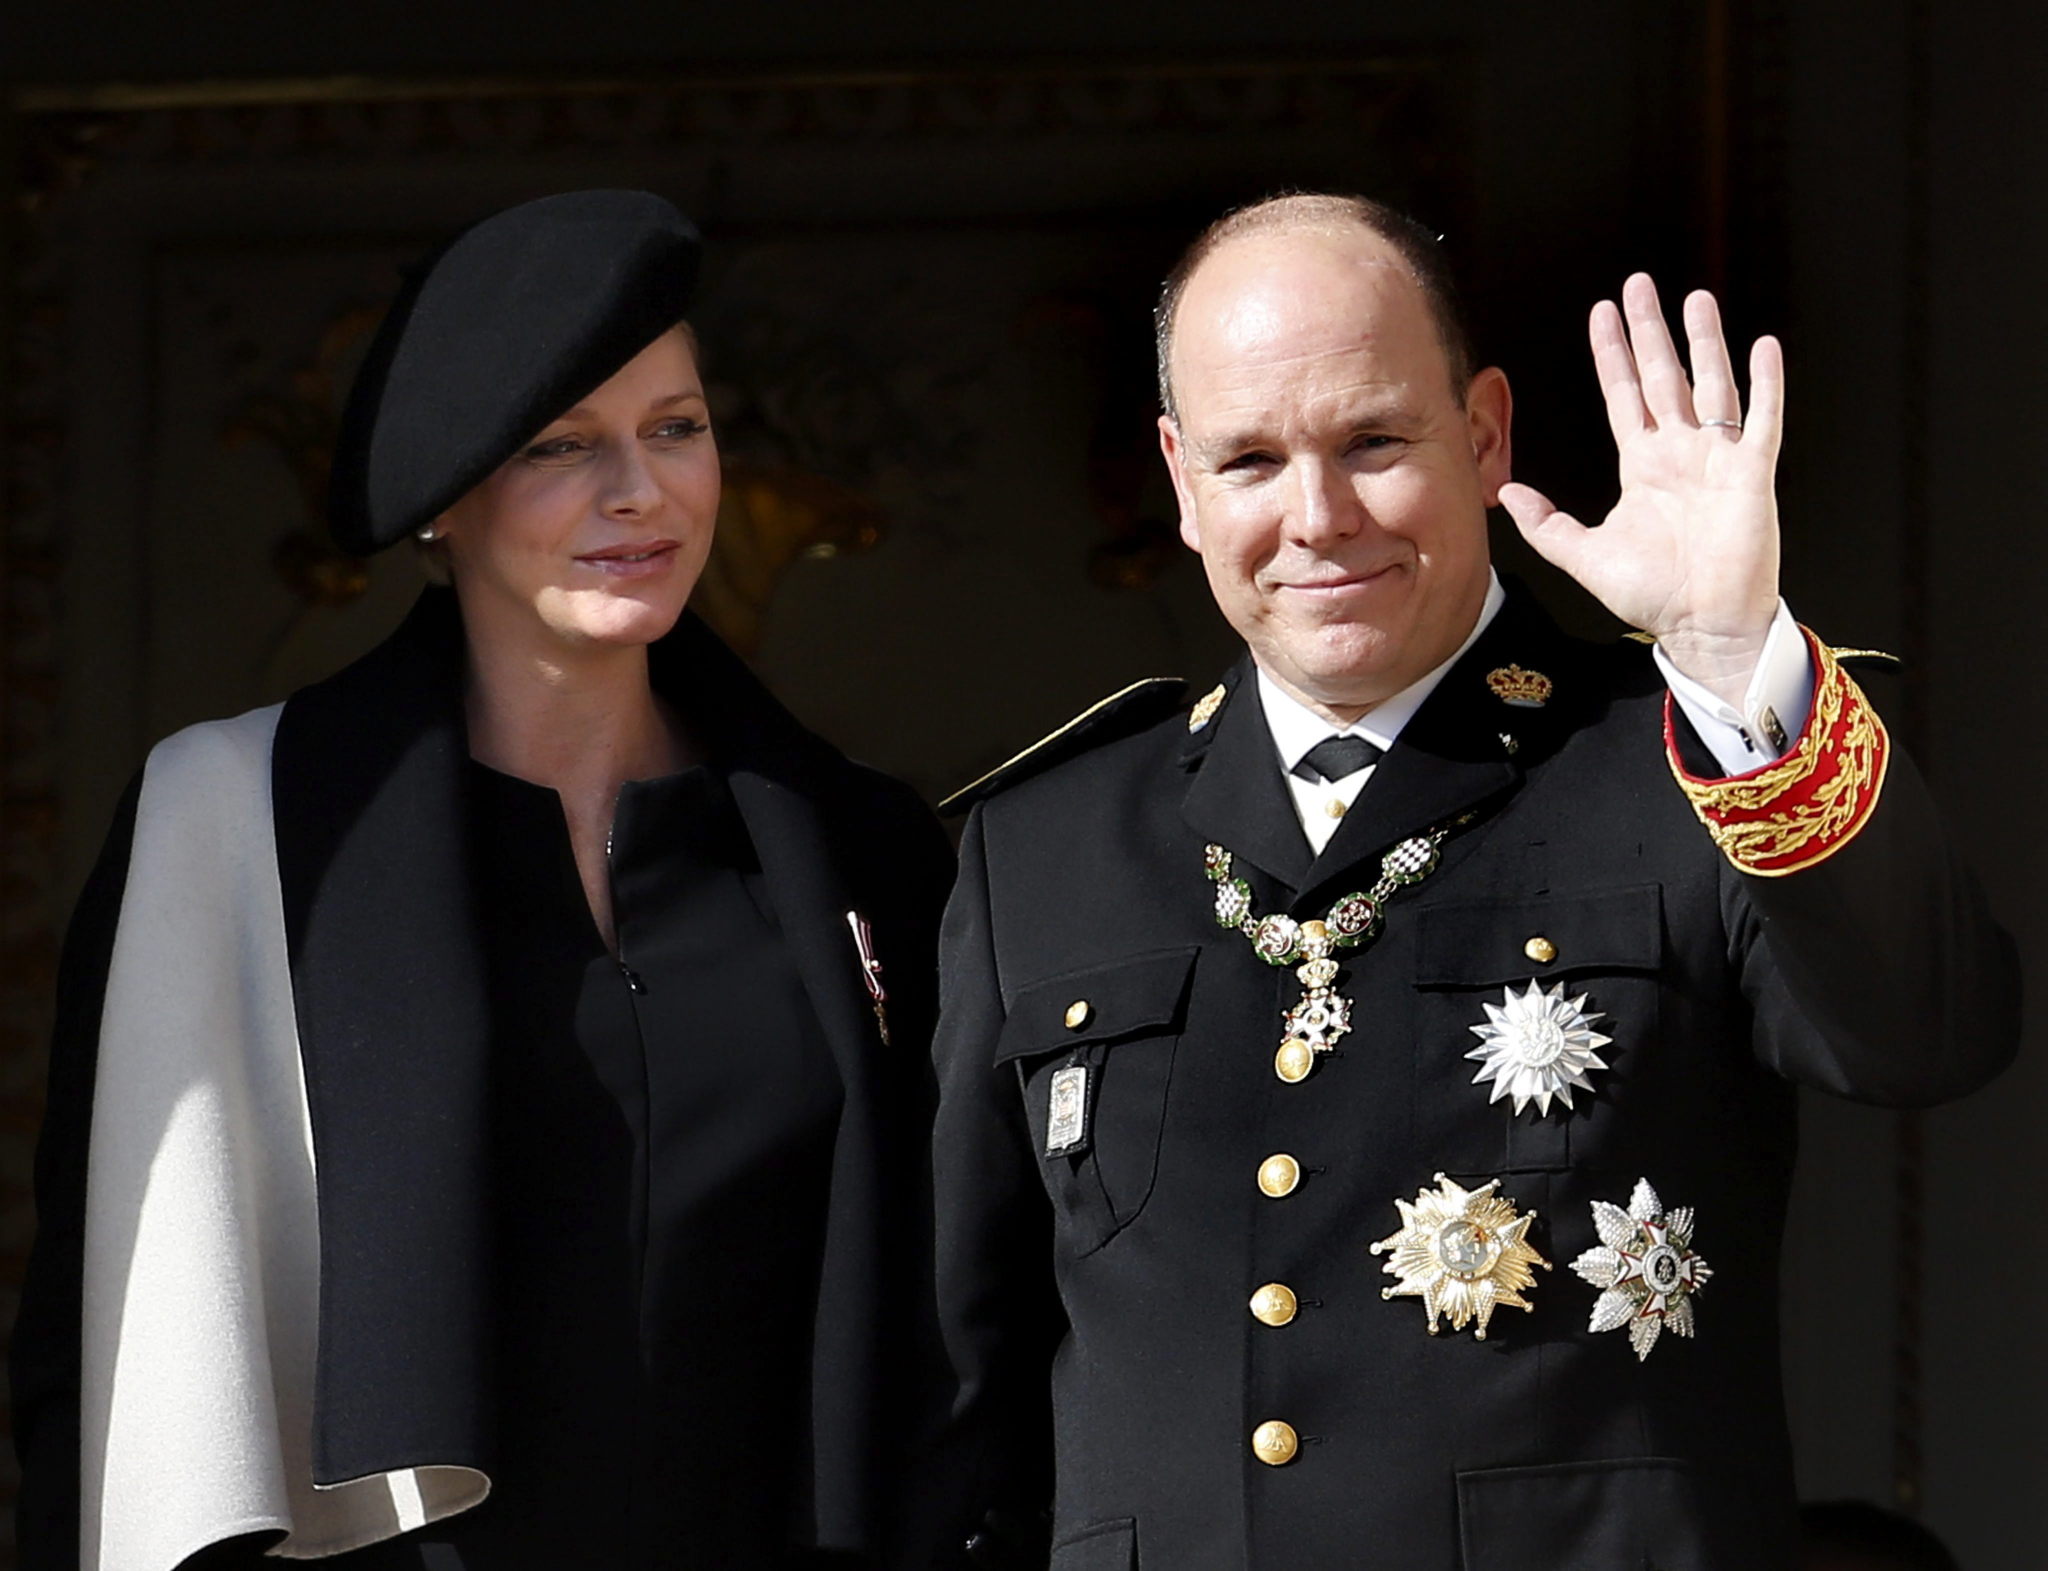 Alberto de Mónaco vestido con el traje de gala militar.